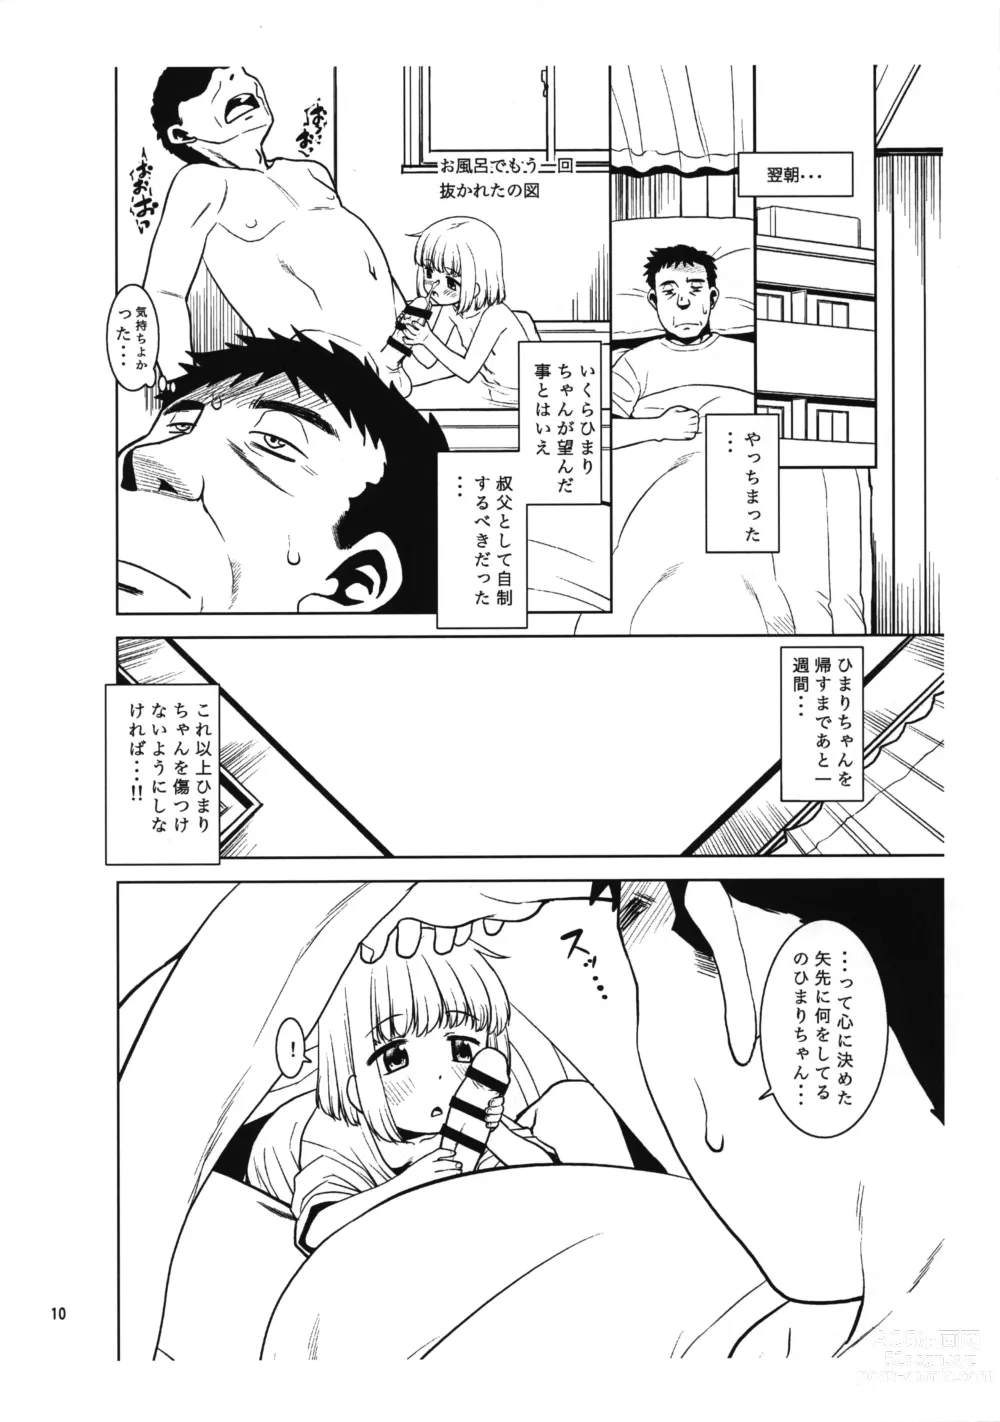 Page 9 of doujinshi Meikko ni Asadachi o Mirareta node Eroi koto o Oshietemita. Preview-ban